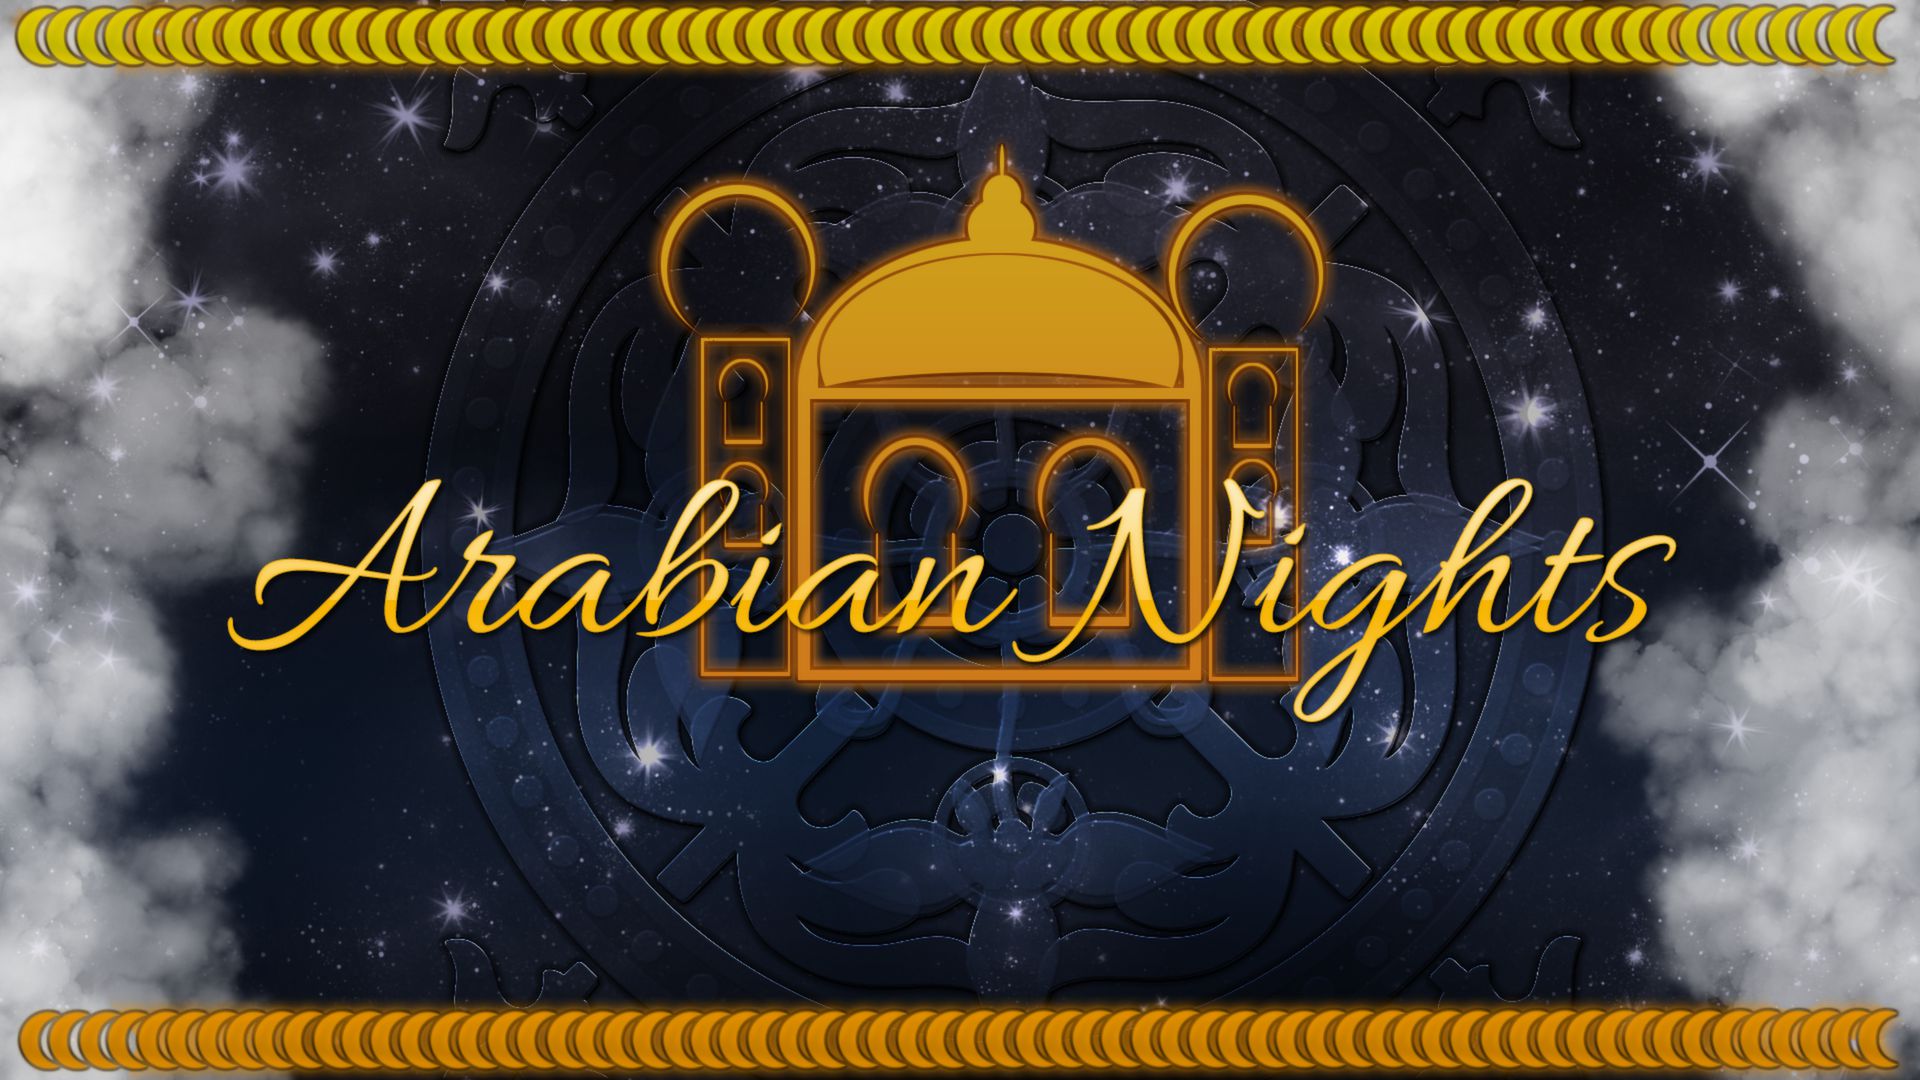 RPG Maker VX Ace - Arabian Nights Featured Screenshot #1